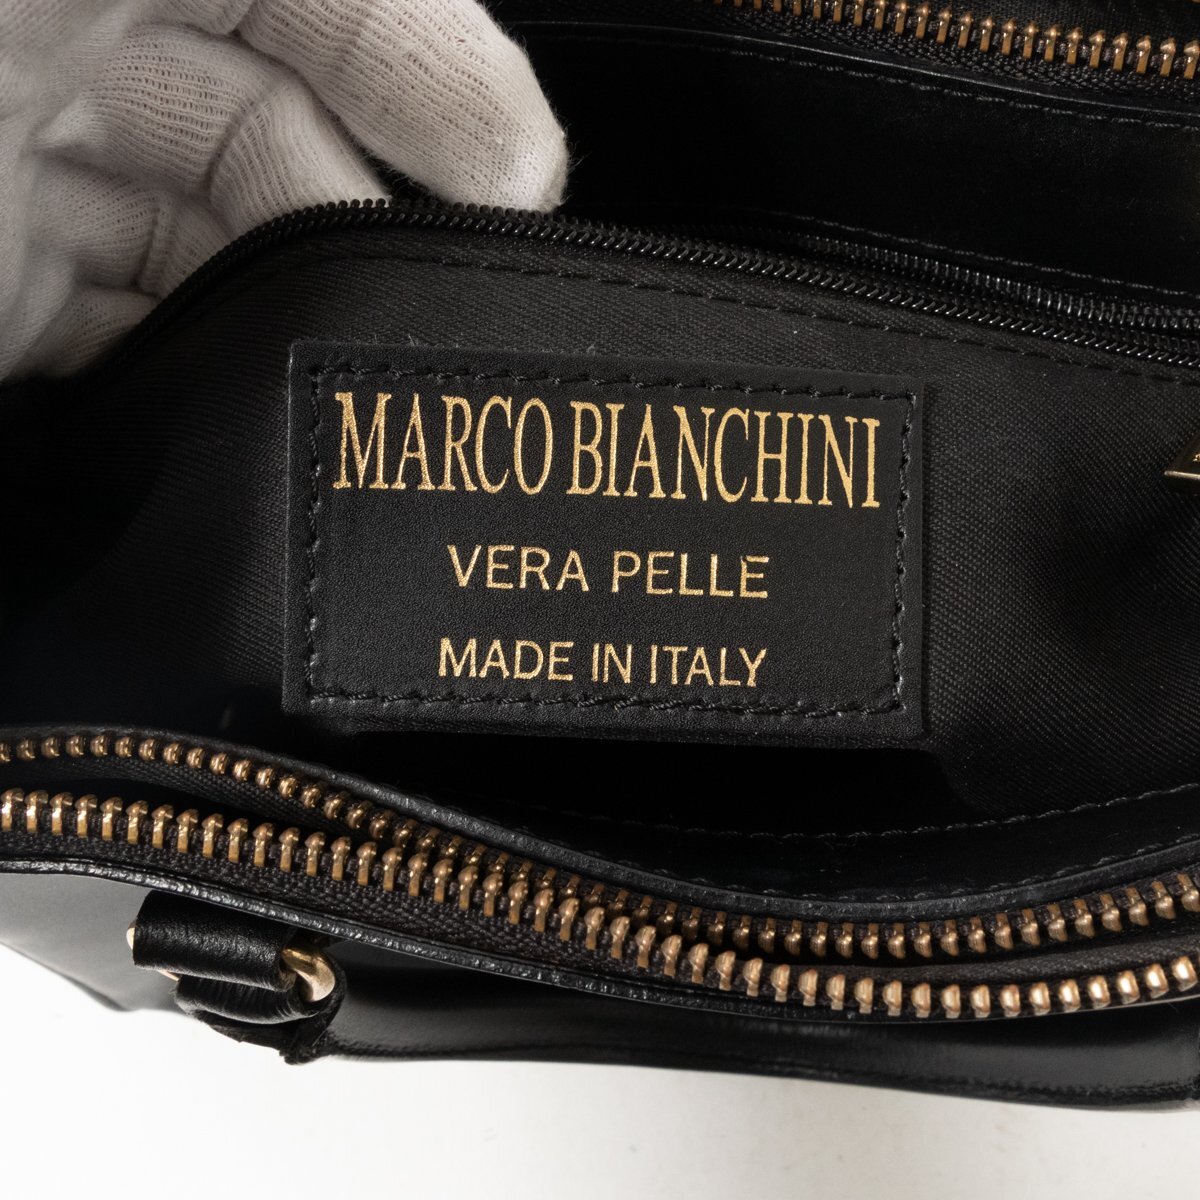 MARCO BIANCHINI マルコビアンキーニ ハンドバッグ 手持ち鞄 イタリア製 本革 レザー ブラック 黒系 キレイめ モード レトロ シンプル 婦人_画像10